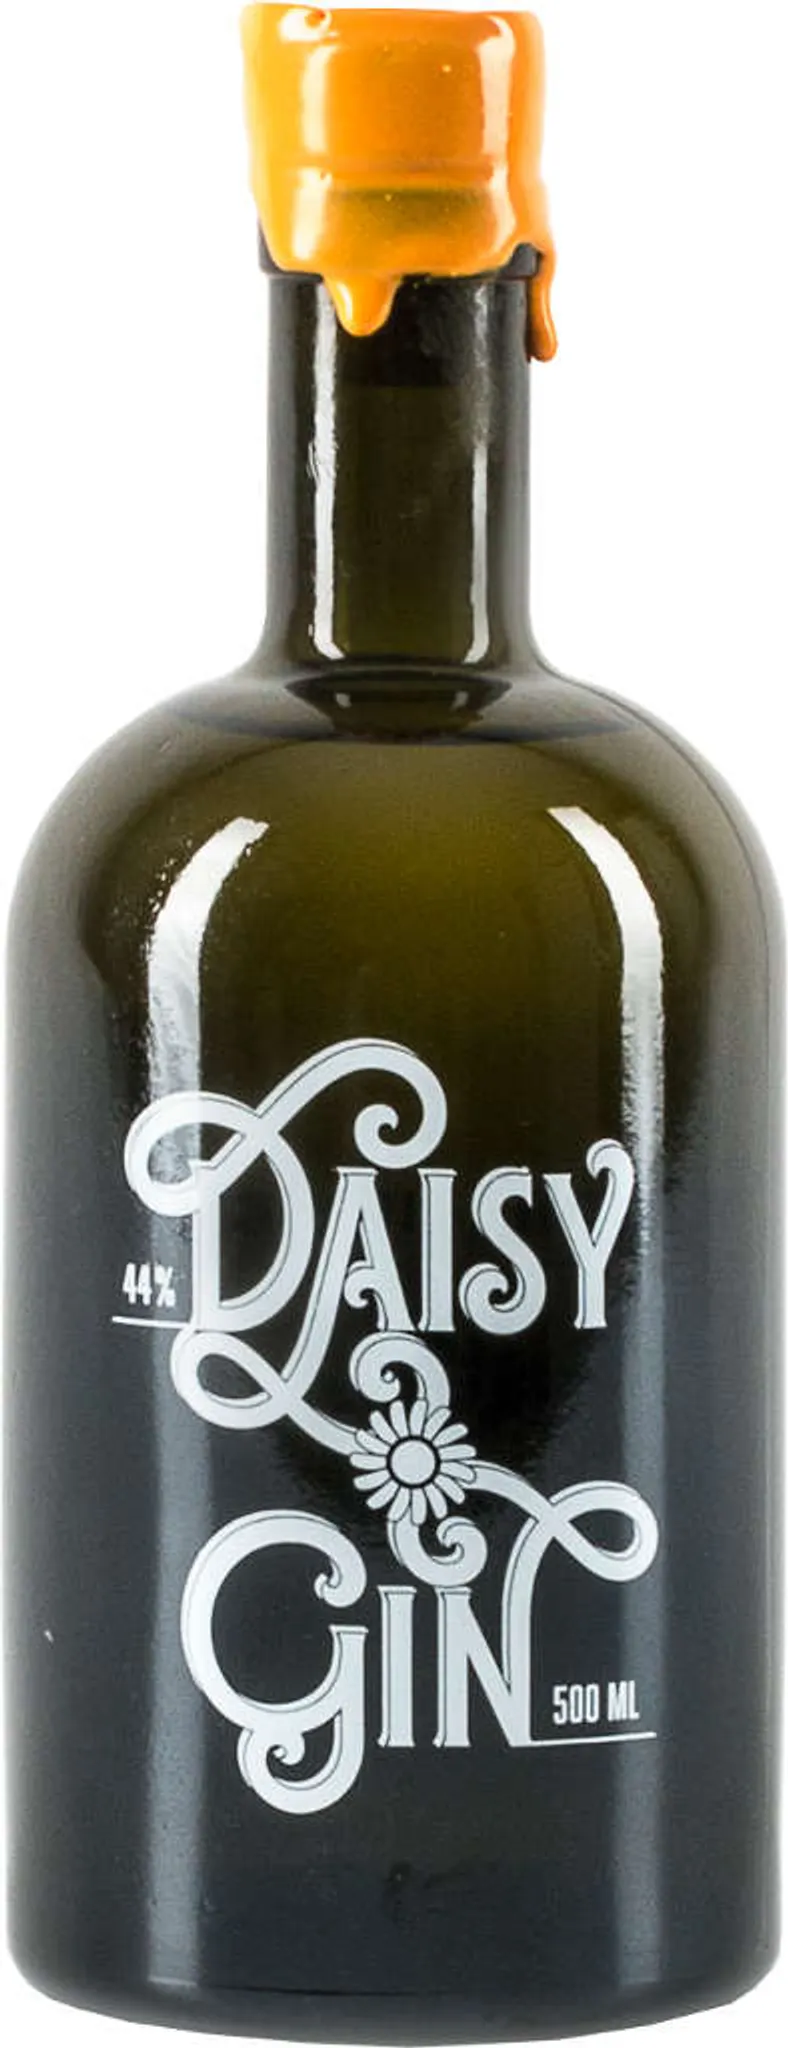 Organic 44 - % London Gin Gin Daisy Gin Dry